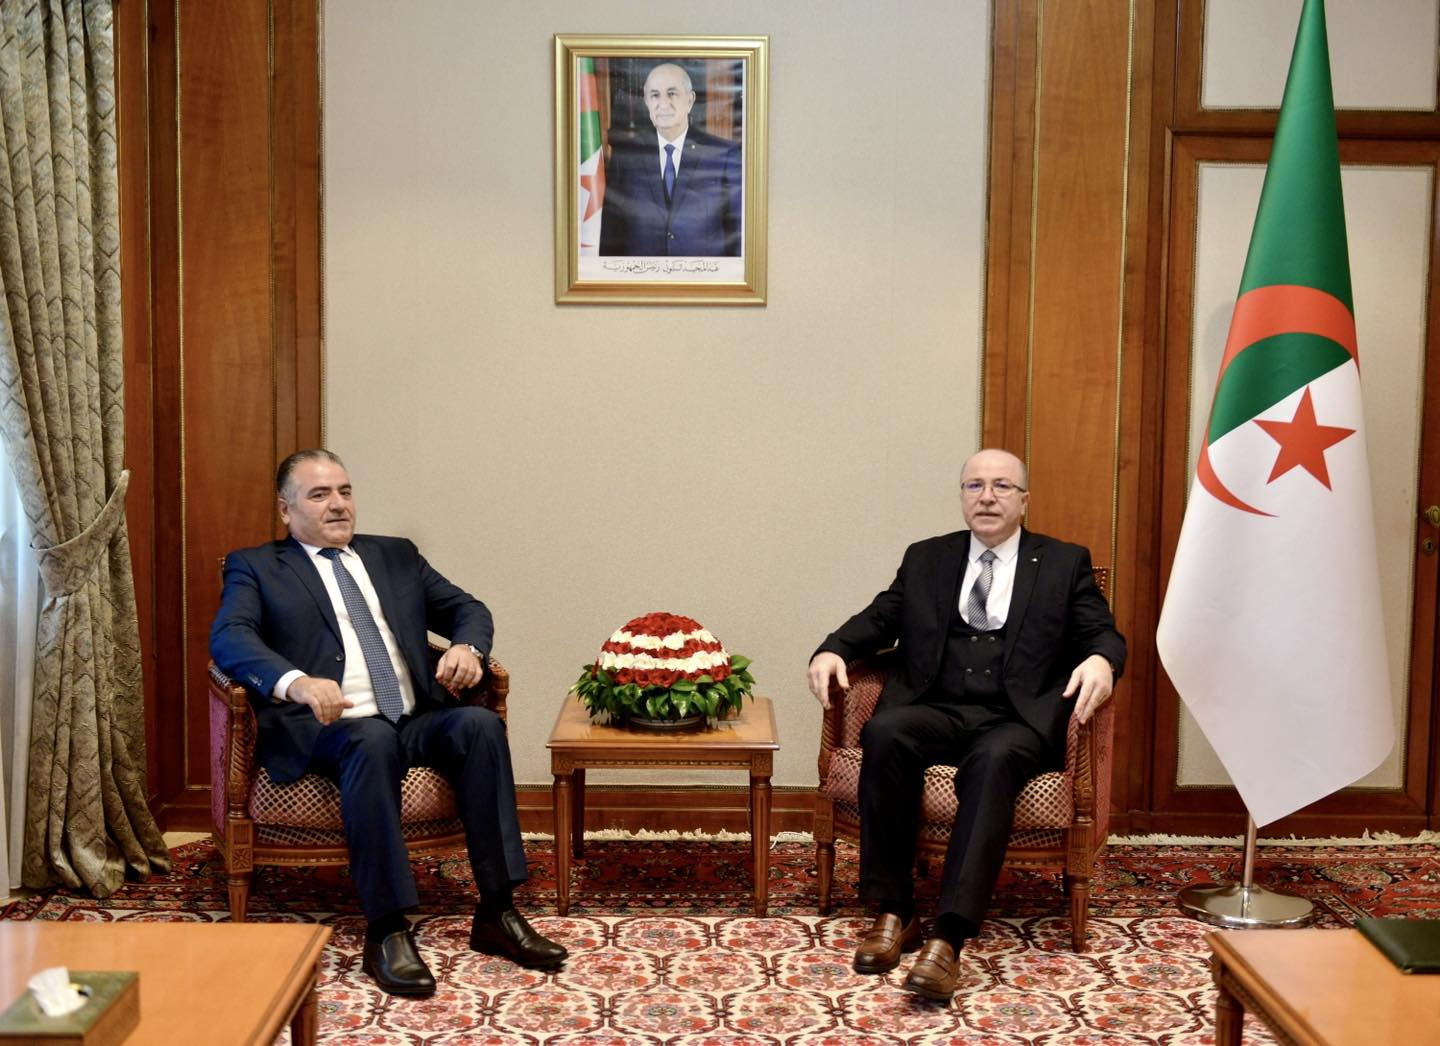 الوزير الأول أيمن بن عبد الرحمان يستقبل سفير الجمهورية اللبنانية بالجزائر محمد حسن